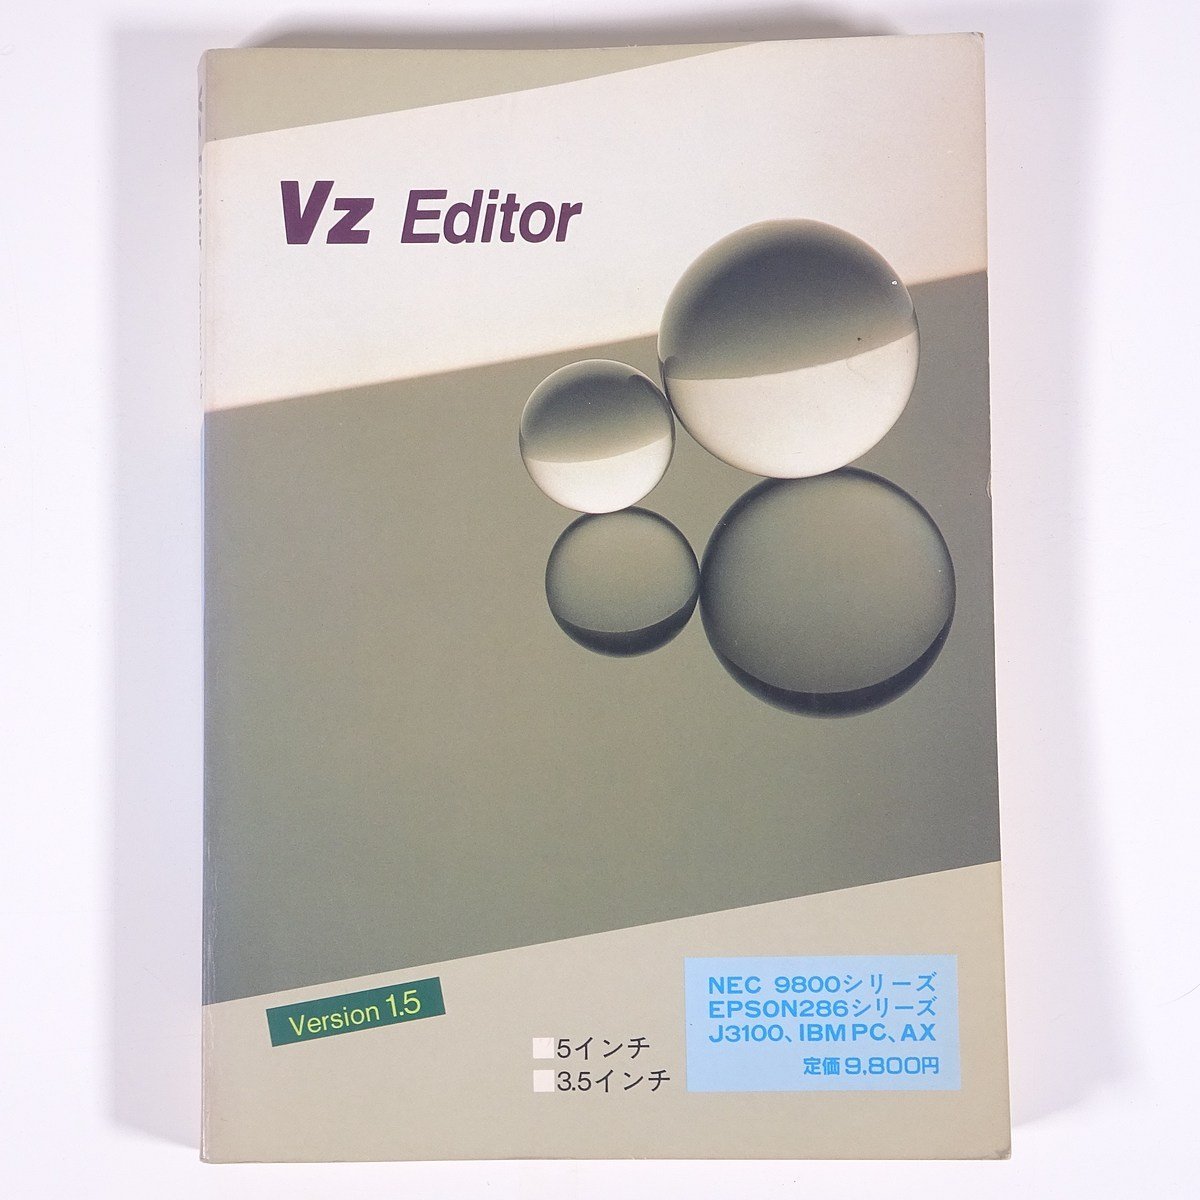 【取扱説明書のみ】 VZ Editor VZエディタ version1.5 ユーザーズマニュアル 1989 単行本 PC パソコン MS-DOS テキストエディタ PC9800 他_画像1